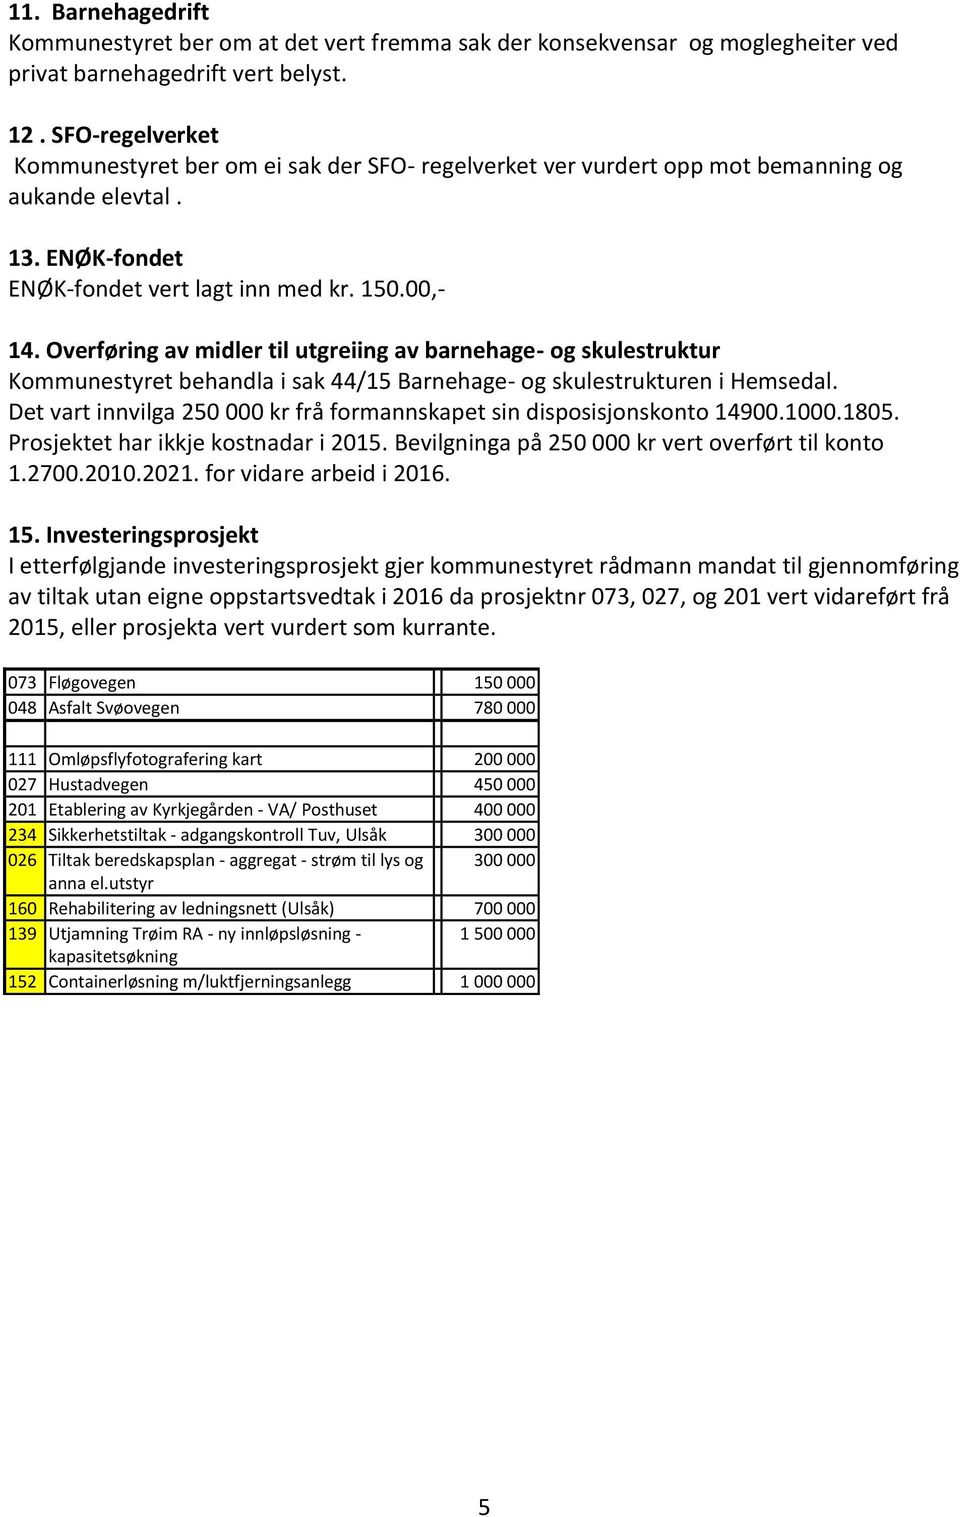 Overføring av midler til utgreiing av barnehage- og skulestruktur Kommunestyret behandla i sak 44/15 Barnehage- og skulestrukturen i Hemsedal.